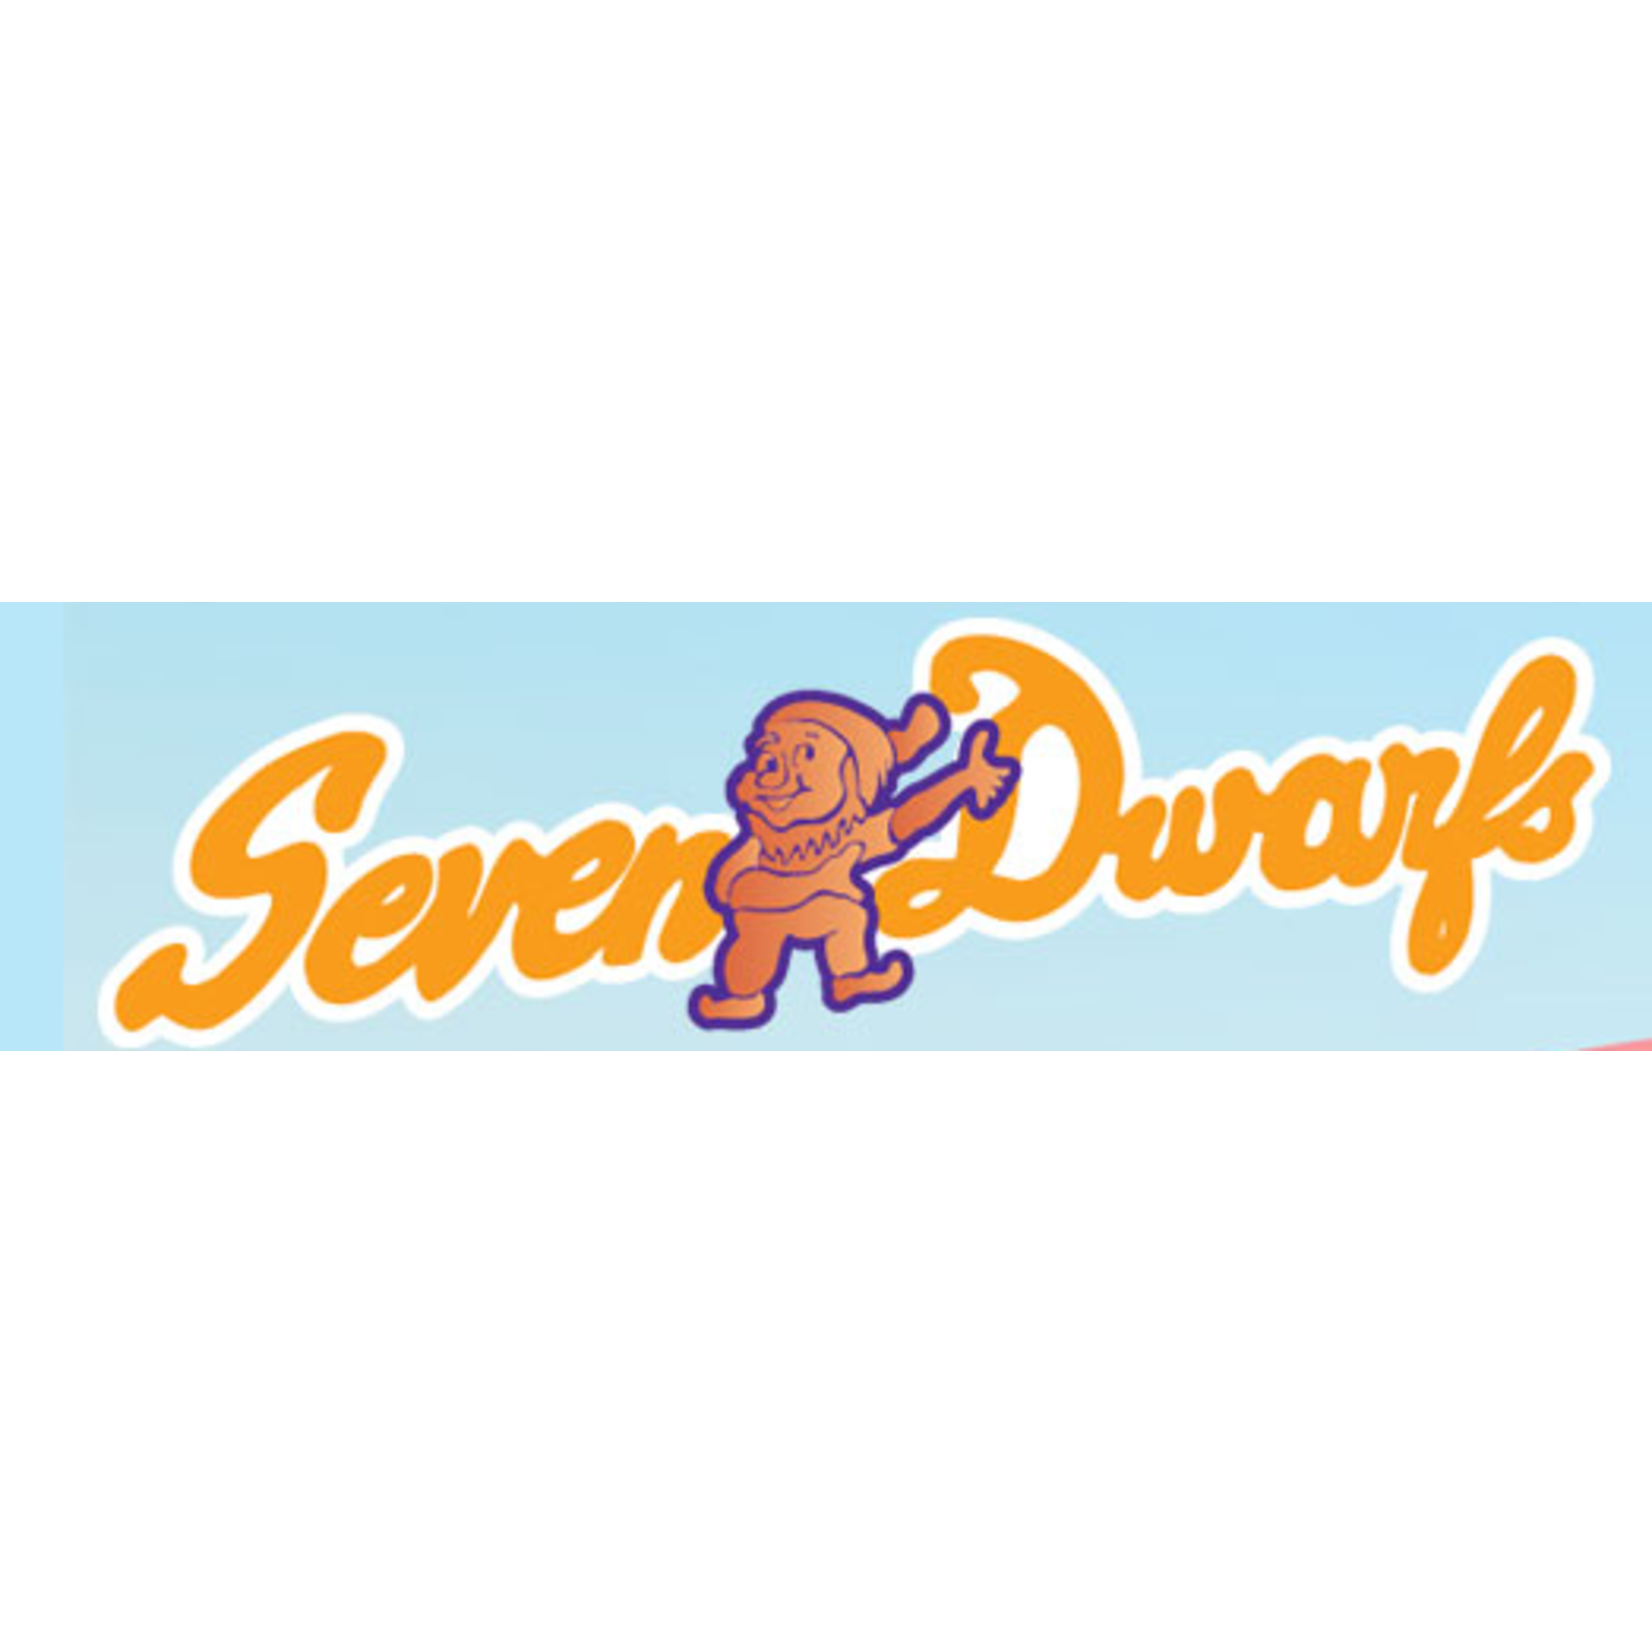 Seven Dwarfs-Wheaton Seven Dwarfs-Wheaton $25.00 Dining certificate